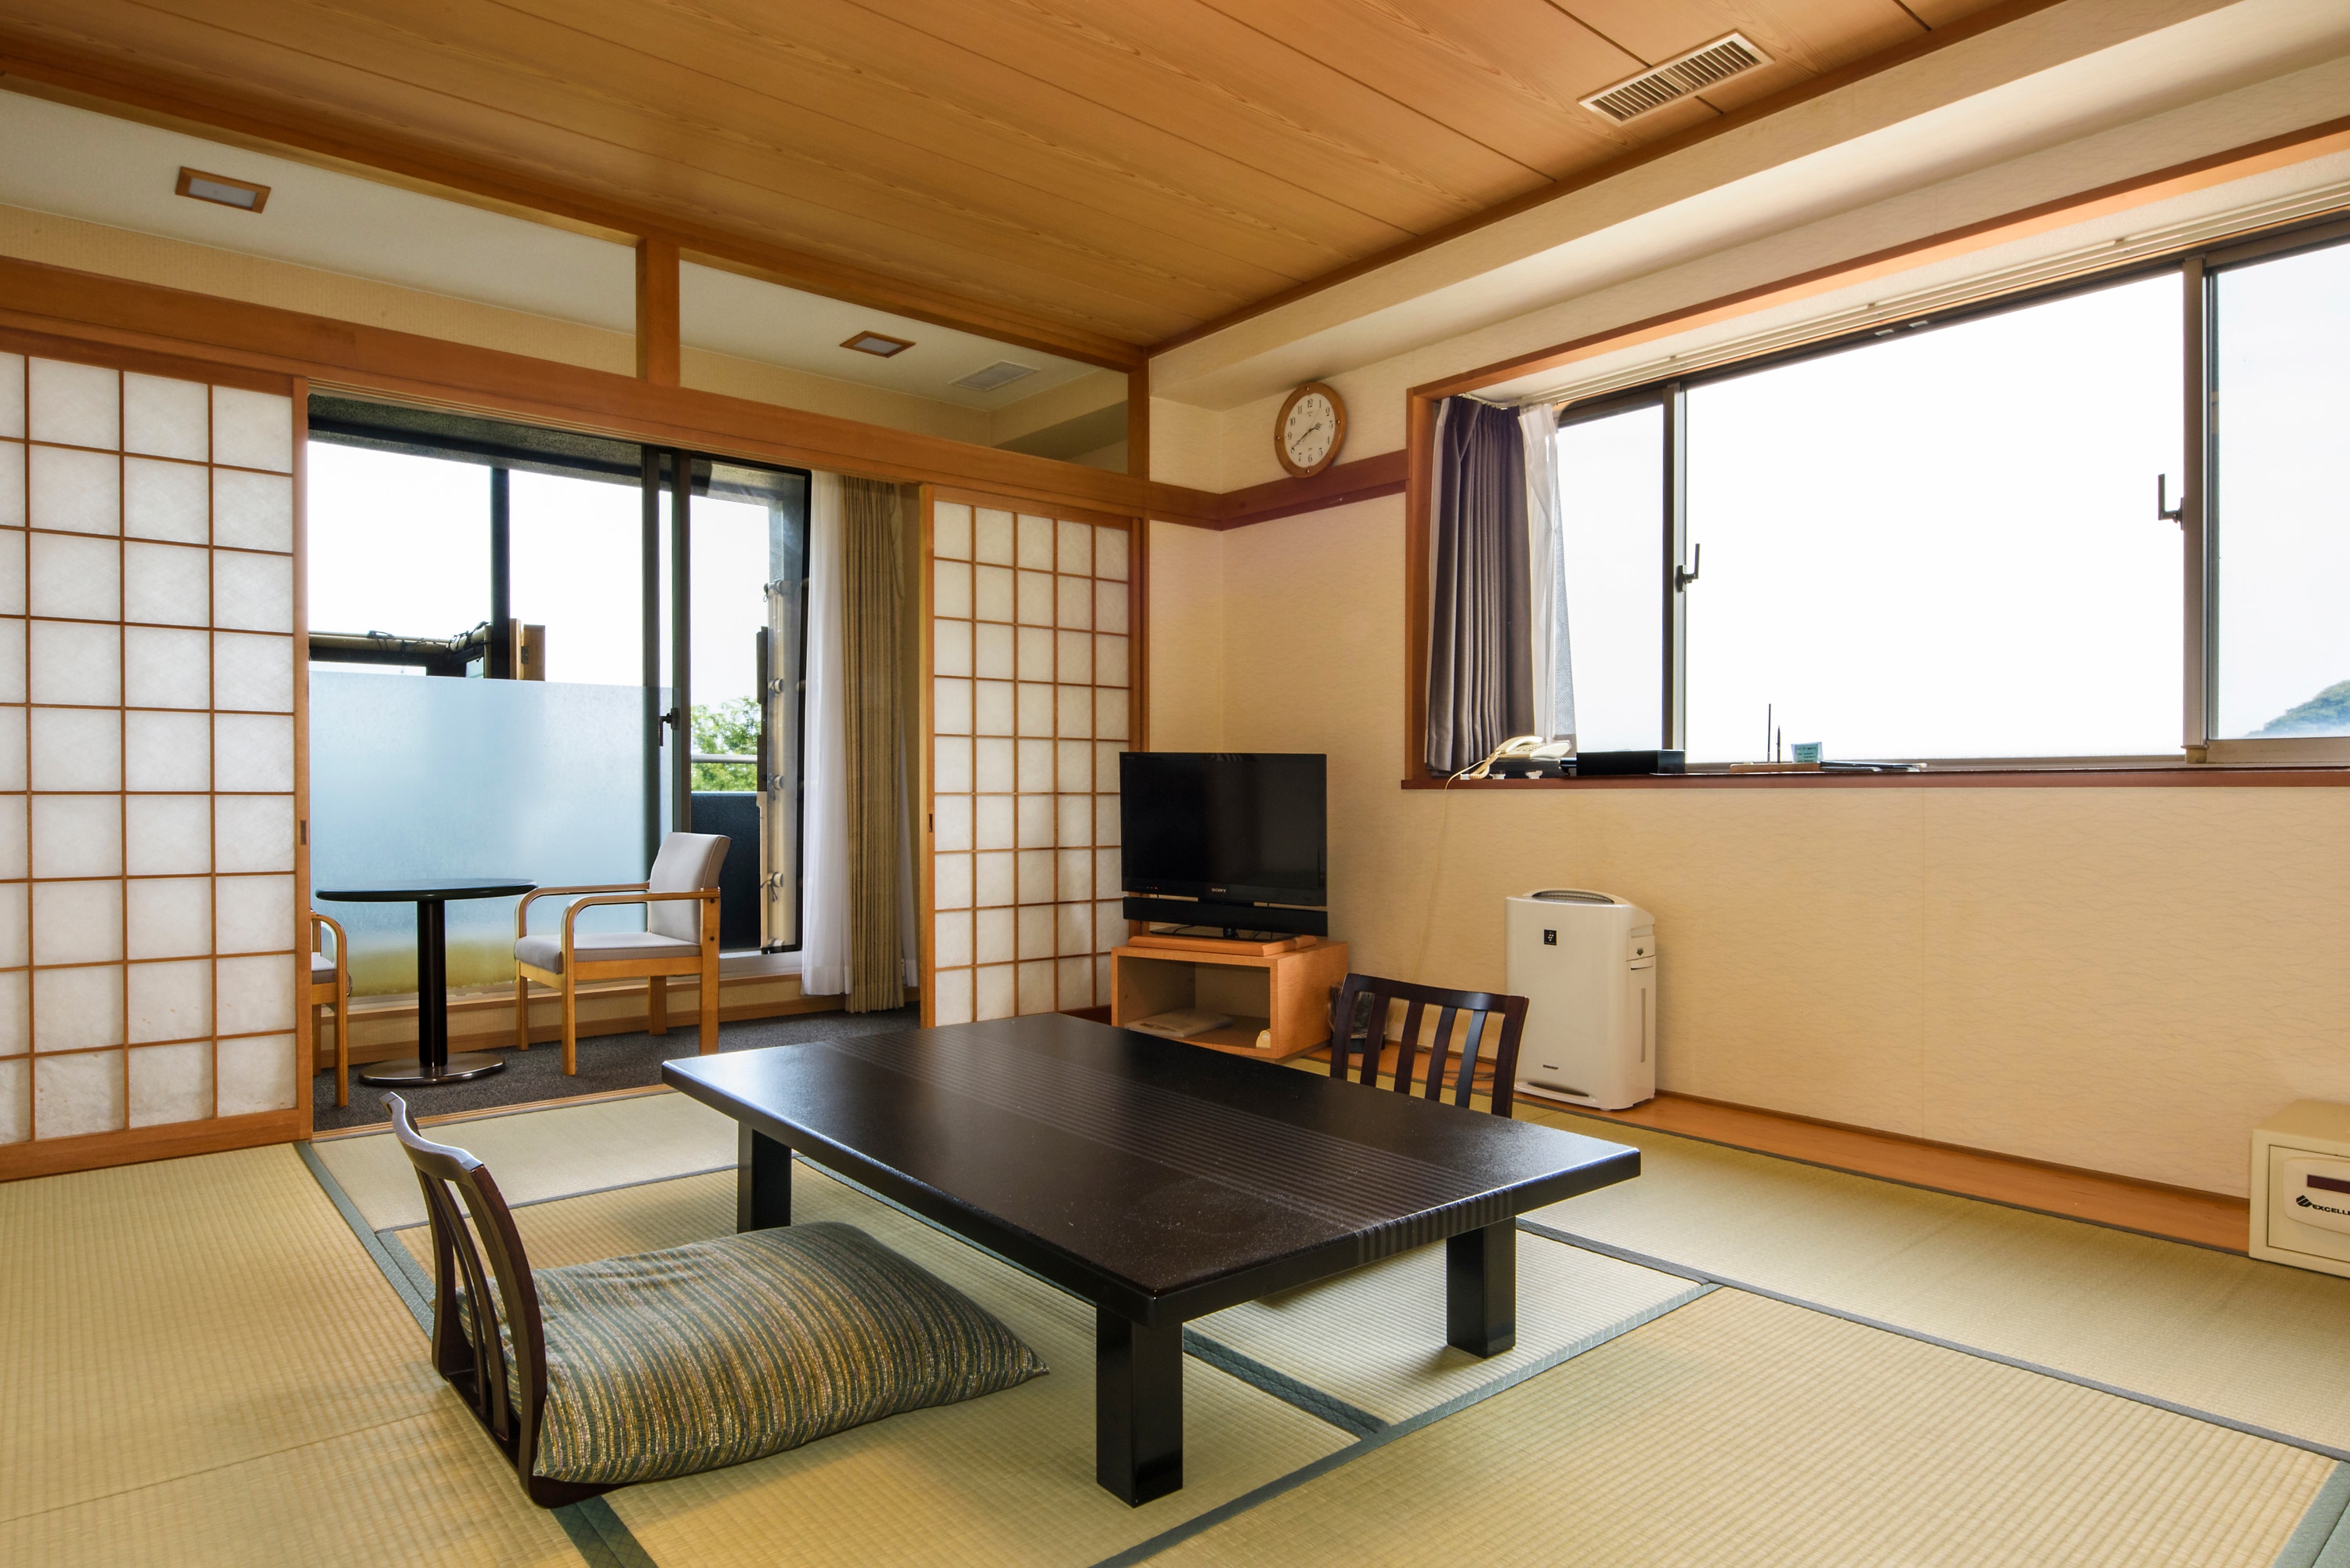 Kamar bergaya Jepang dengan bathtub semi-terbuka